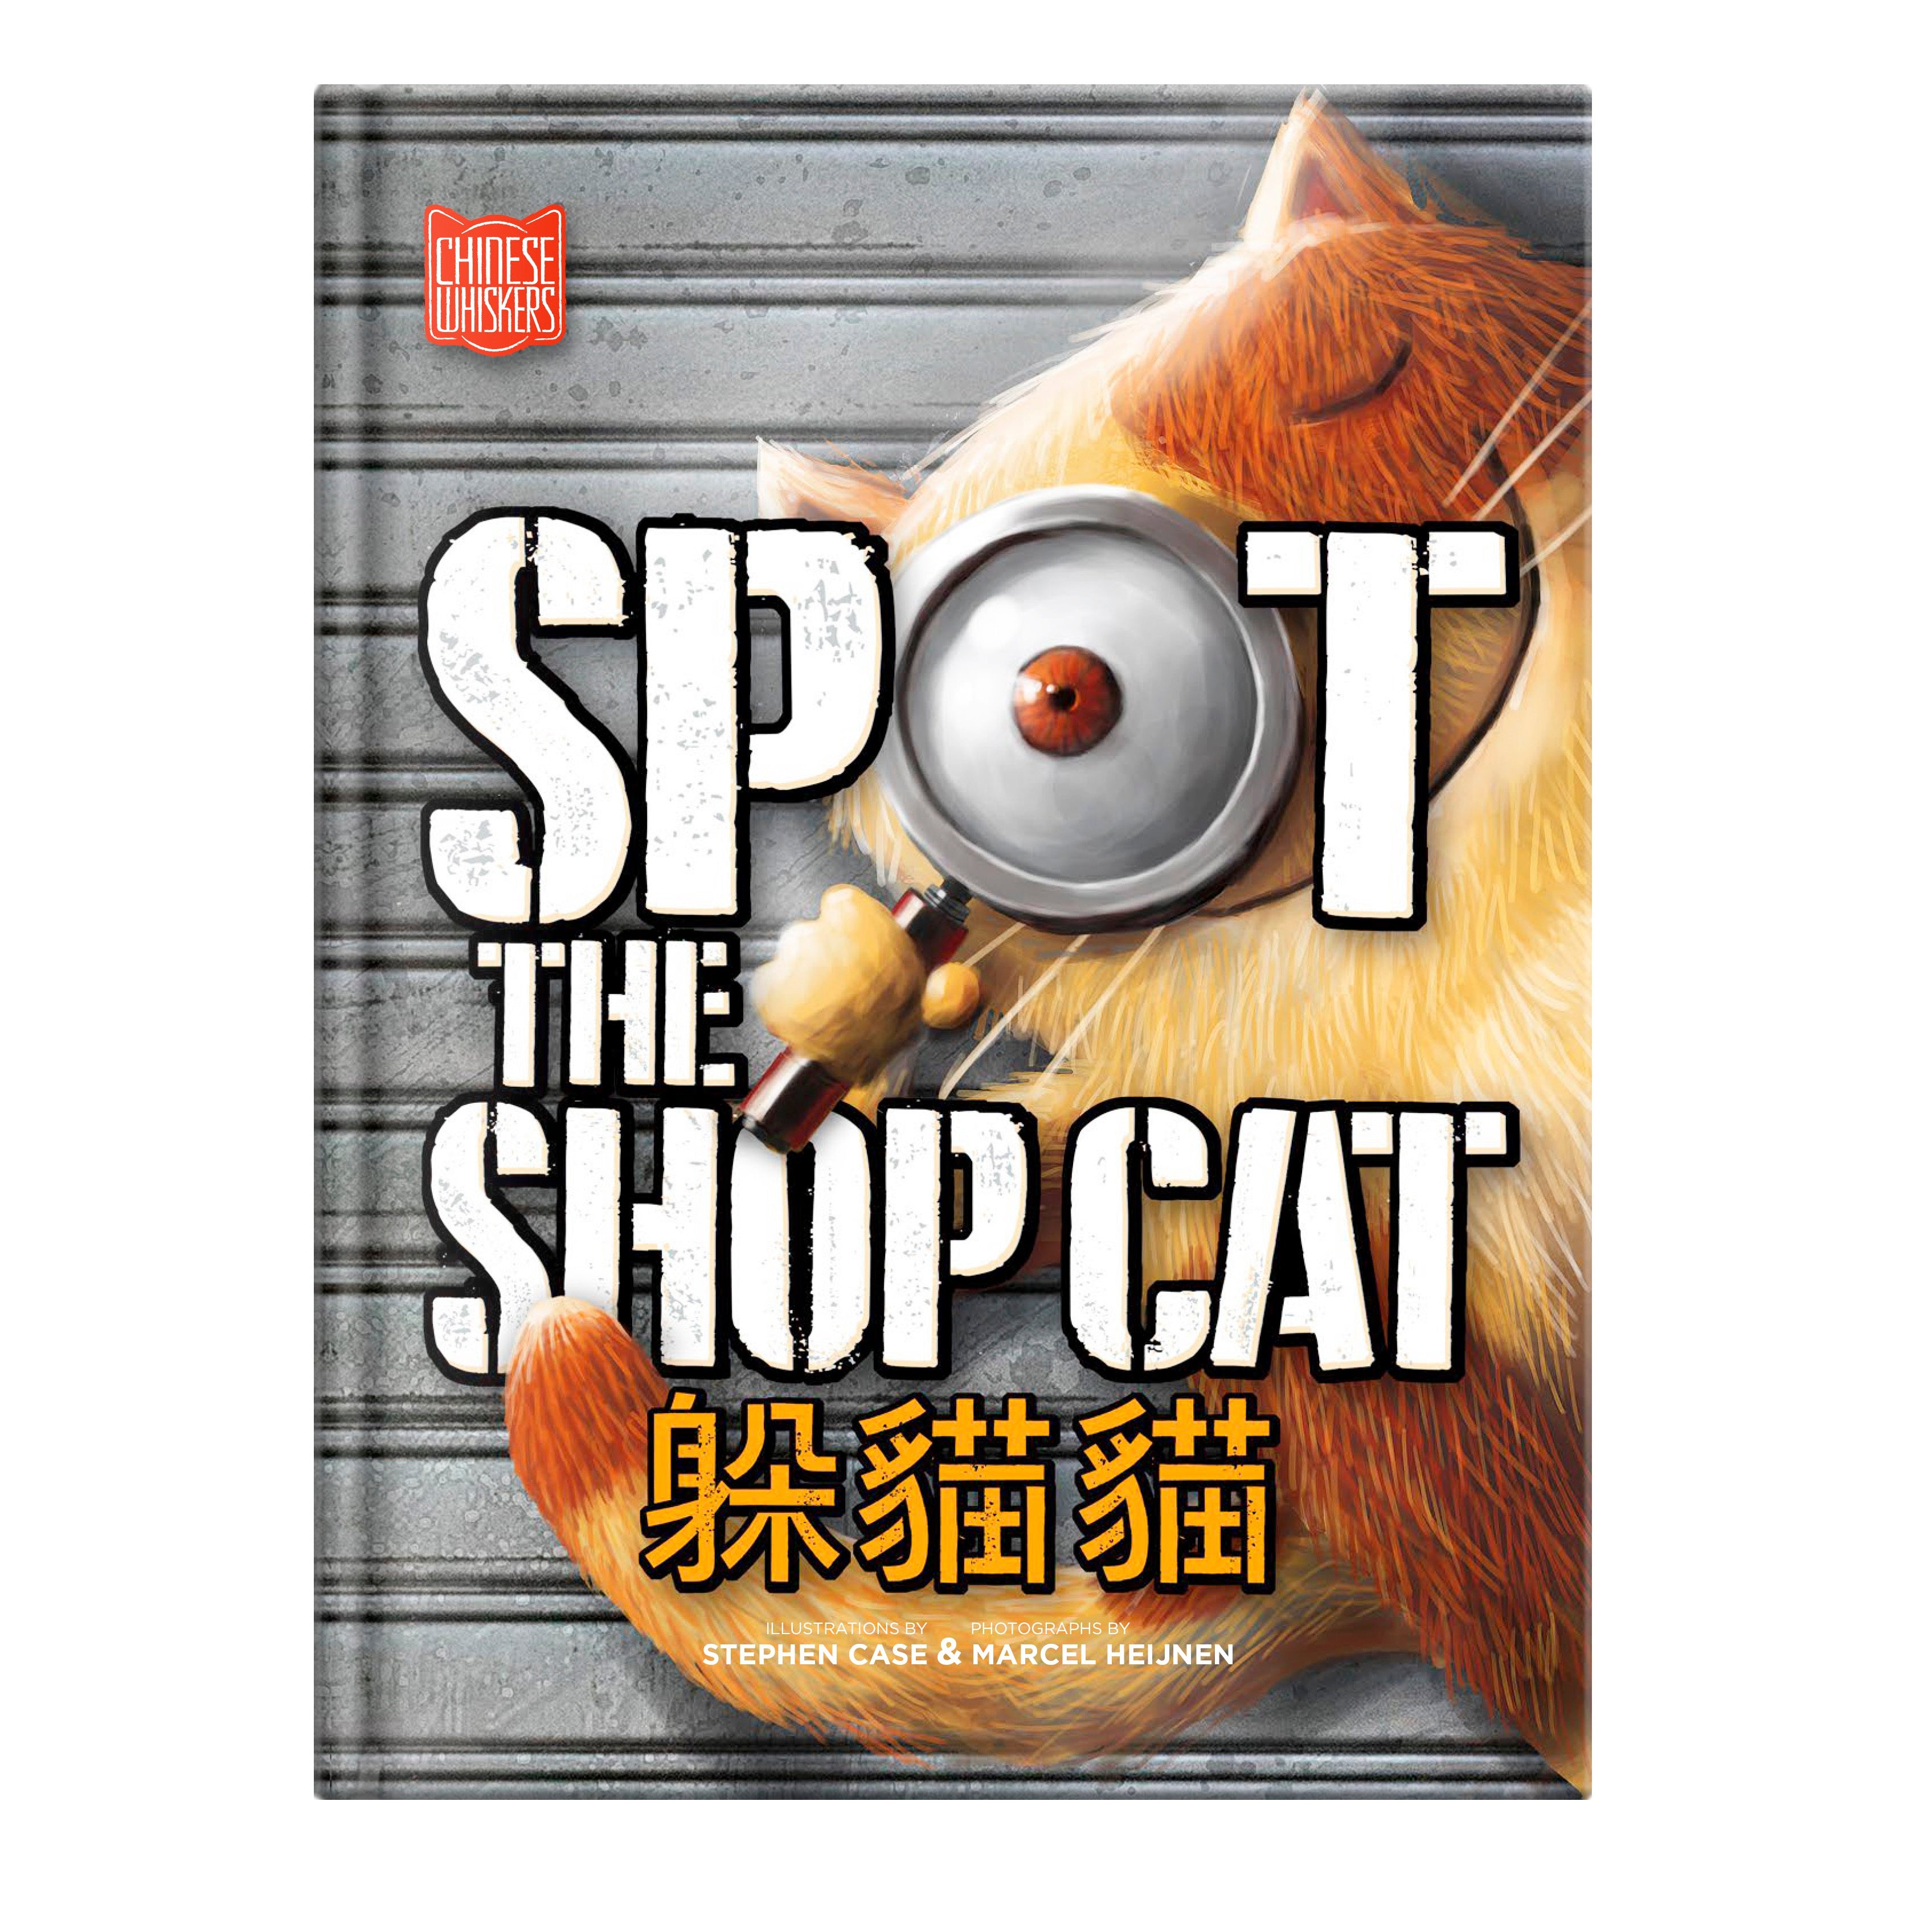 Spot The Shop Cat By Marcel Heijnen